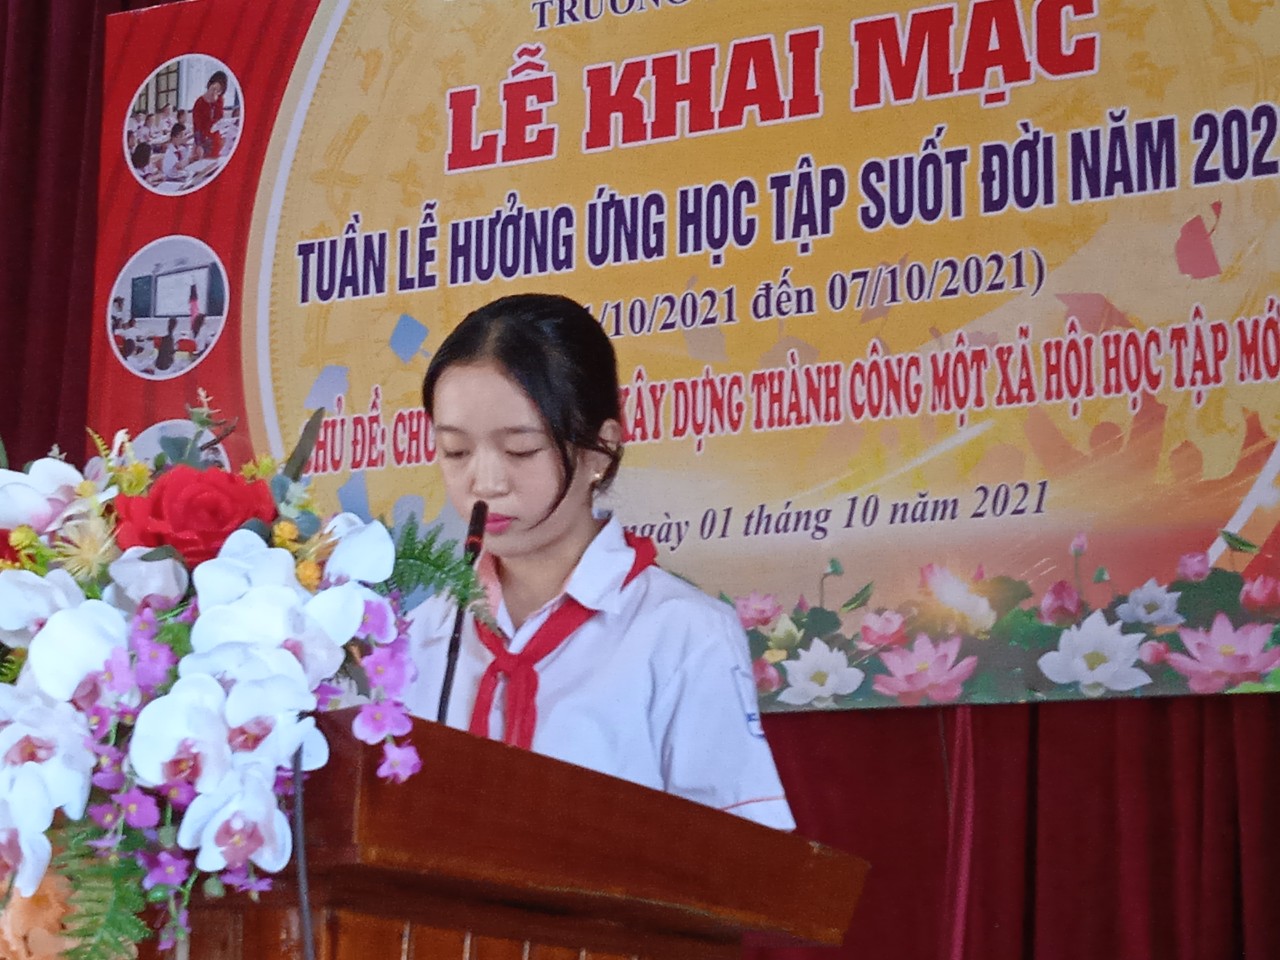 Em Phan Thị Mai Trang - Đại diện 460 học sinh Trường THCS Kỳ Ninh phát biểu hưởng ứng